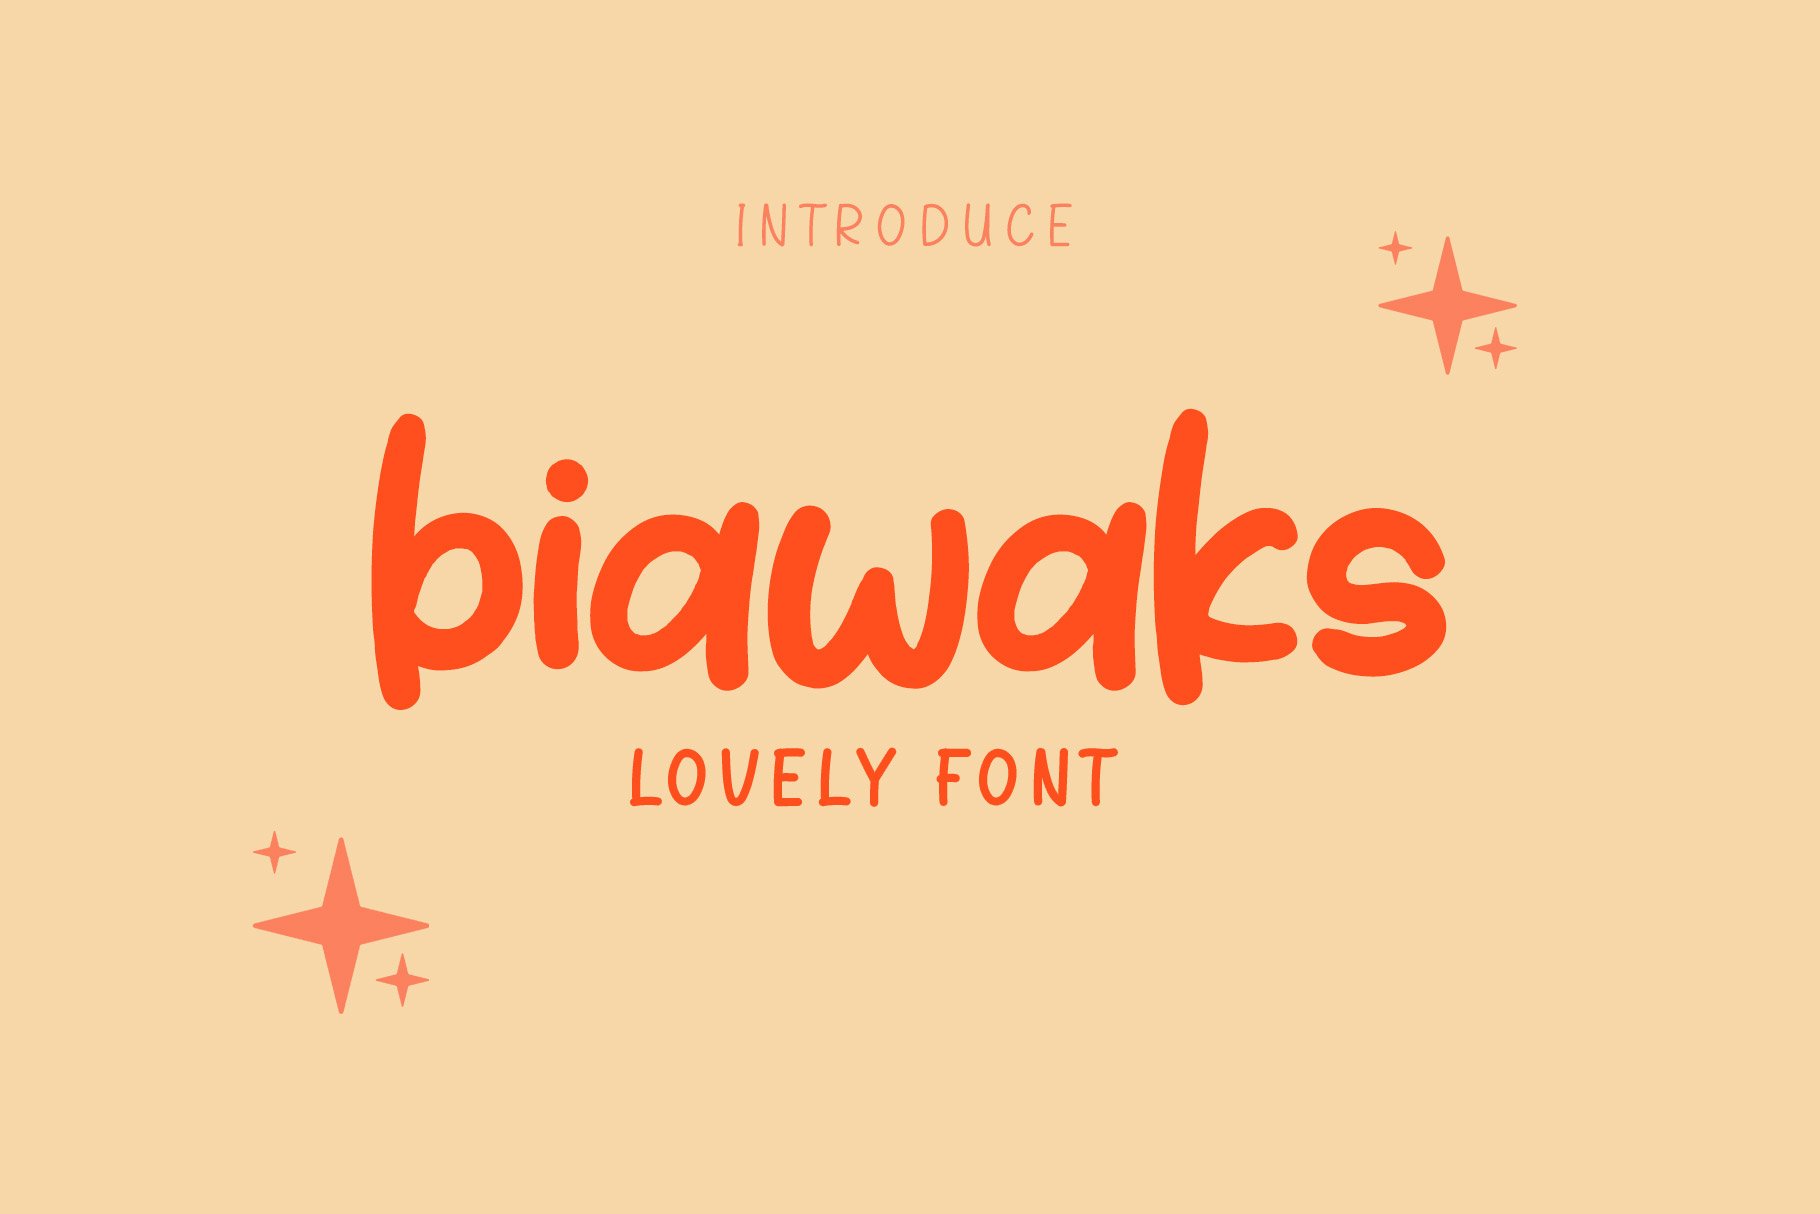 Font Biawaks